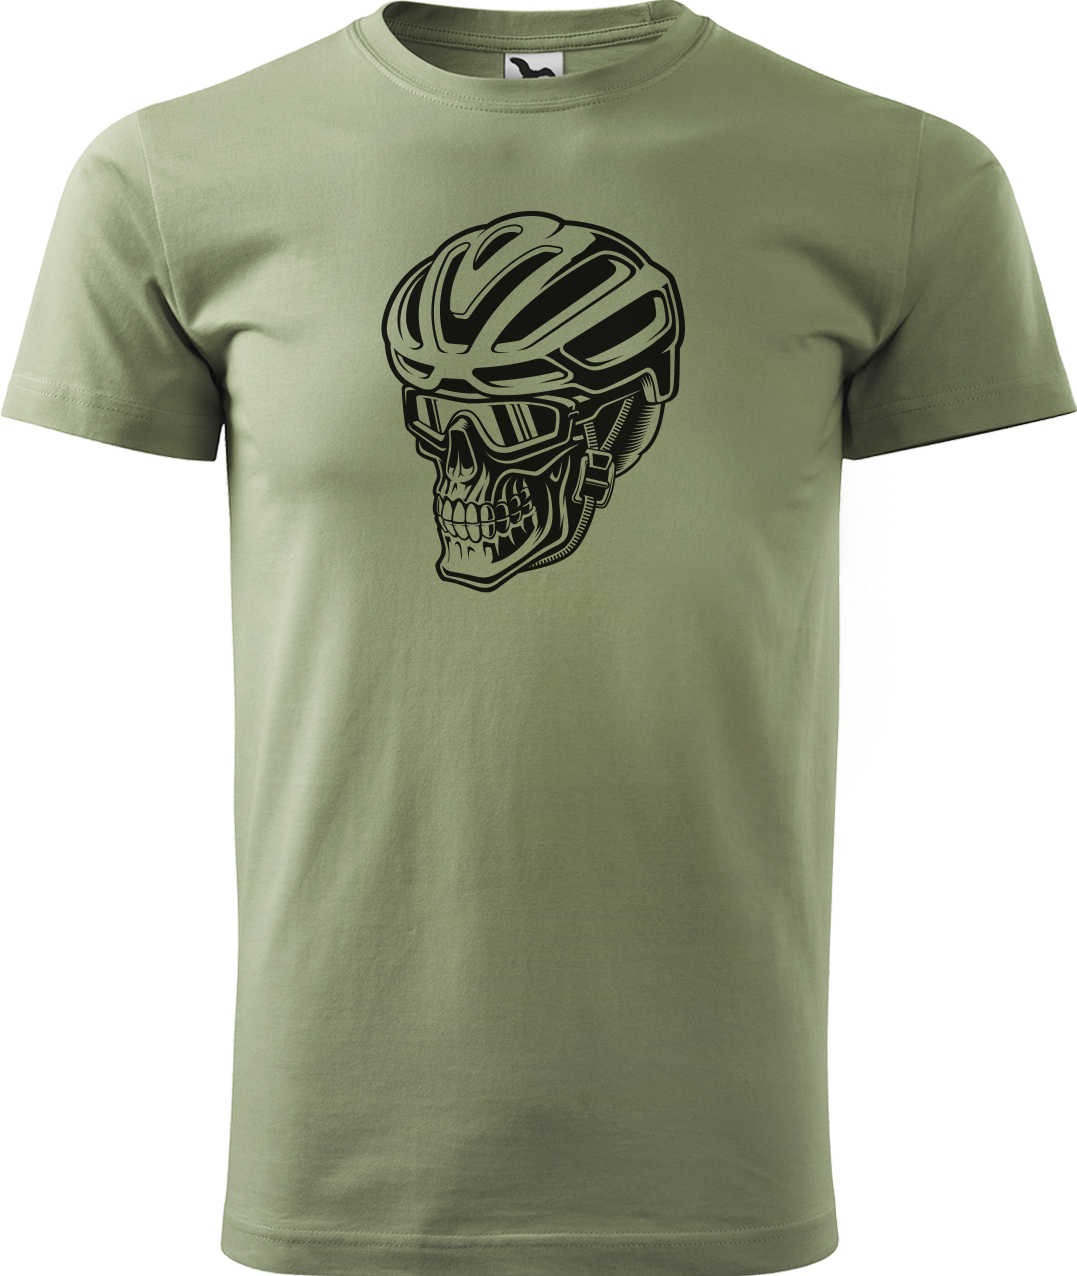 Pánské tričko pro cyklistu - Lebka v helmě Velikost: 3XL, Barva: Světlá khaki (28)